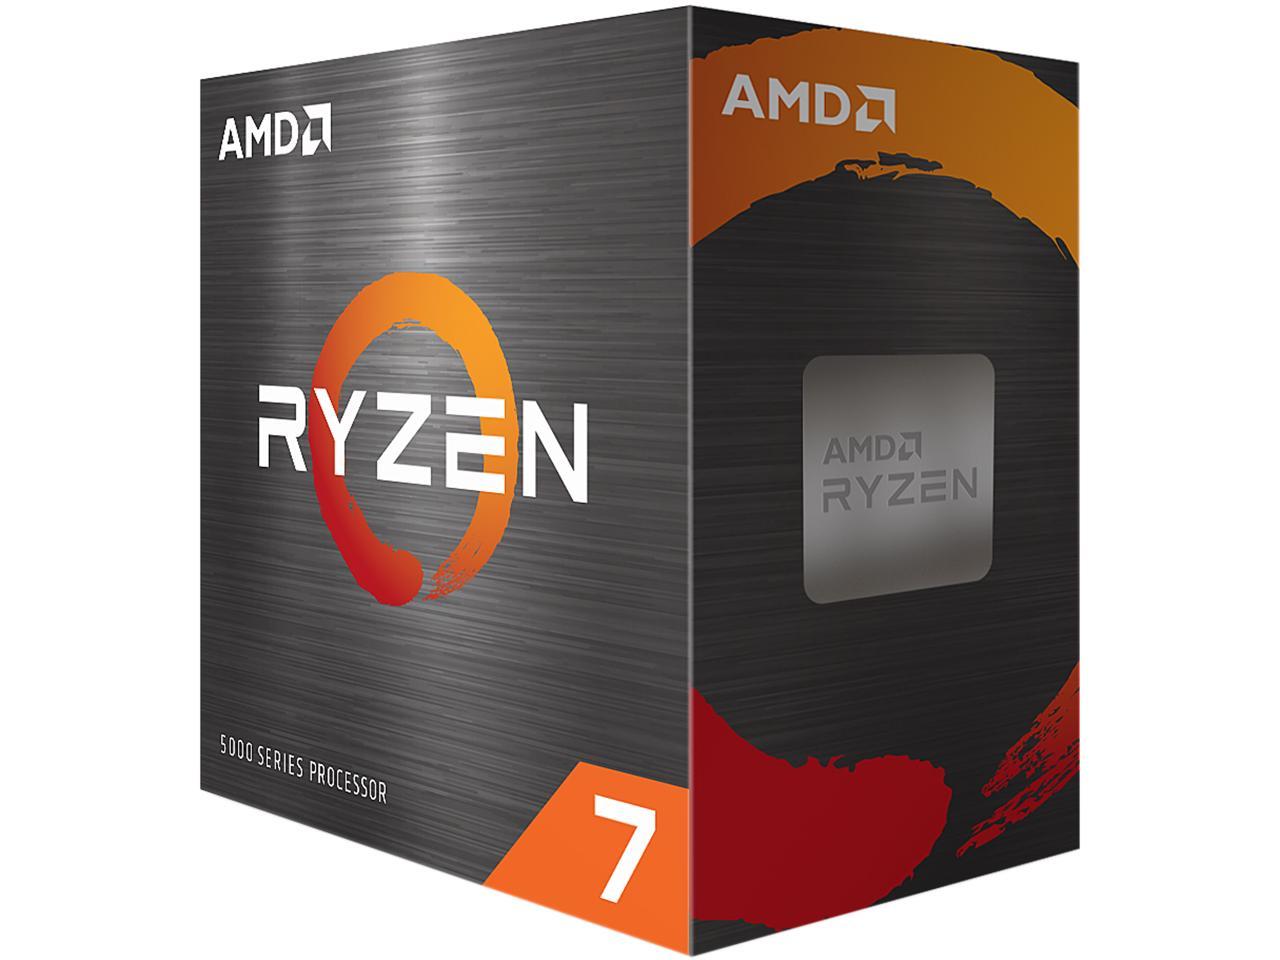 AMD Ryzen 7 5800X 4th Gen 8-core 16-threads Unlocked Desktop Processor $244 + Free Shipping